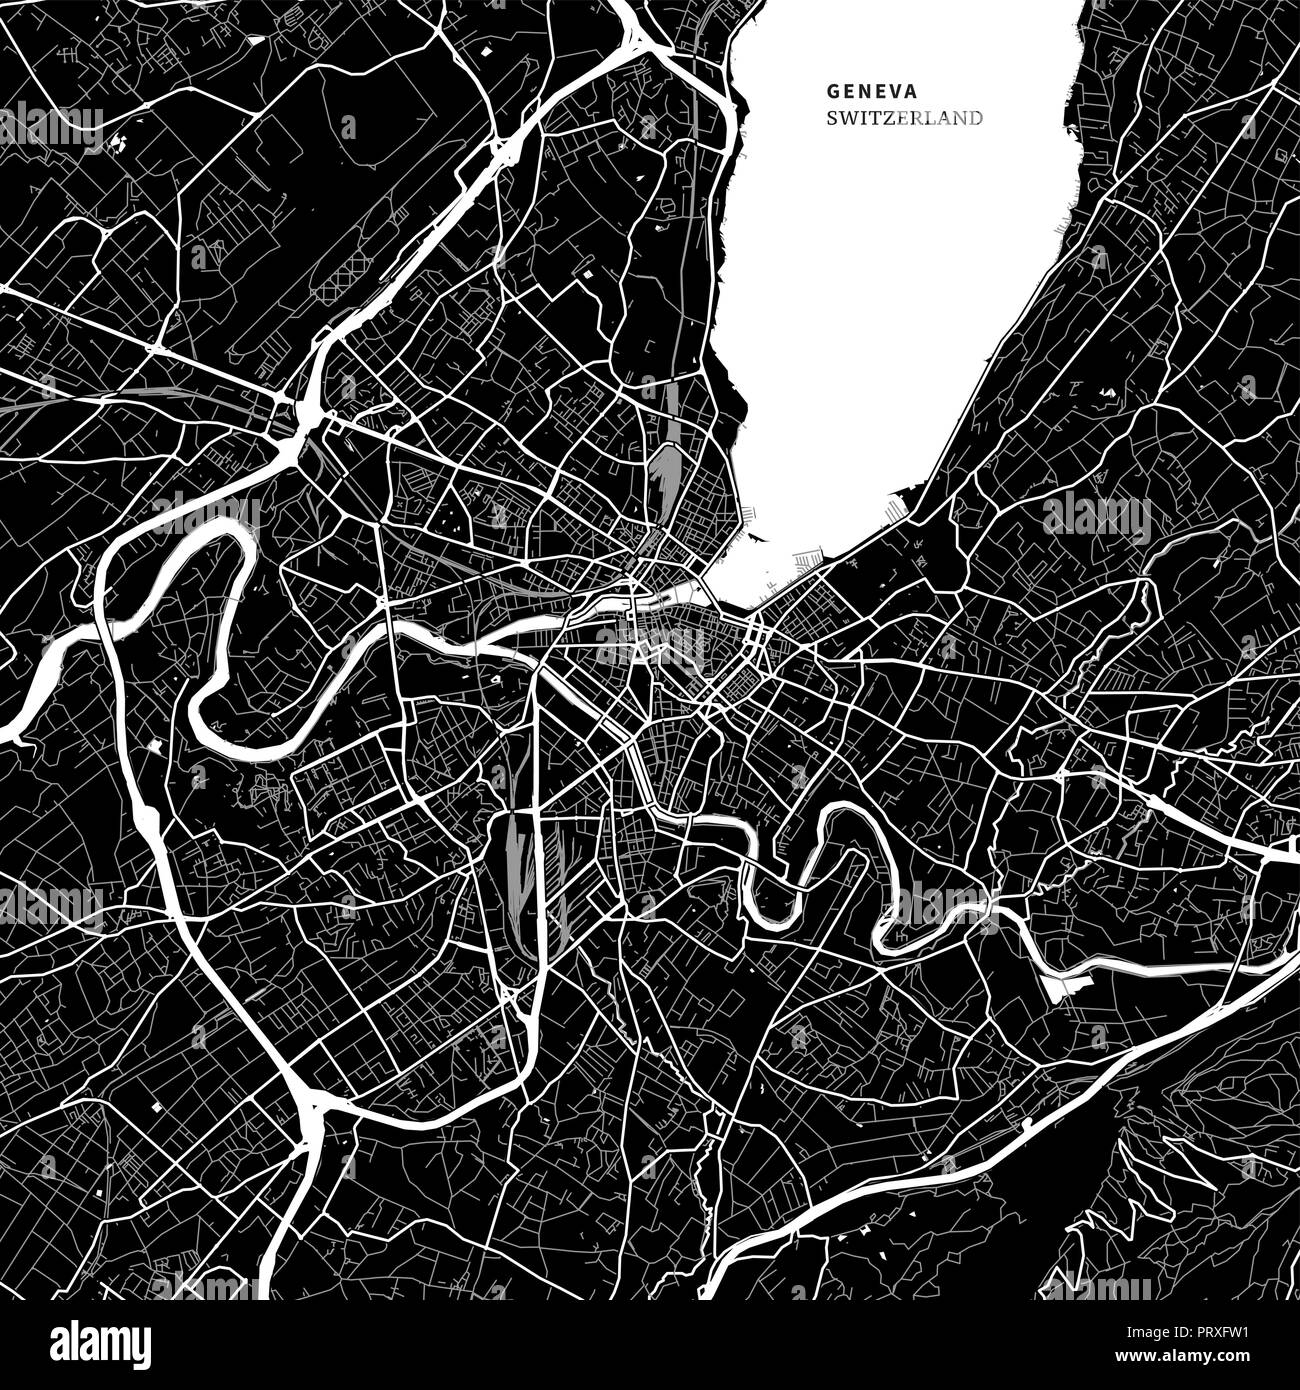 Stadtplan von Genf, Schweiz mit typischen städtischen Wahrzeichen wie Gebäude, Straßen, Wasserwege und Eisenbahnen sowie kleinere Straßen und Parks Trails. Stock Vektor